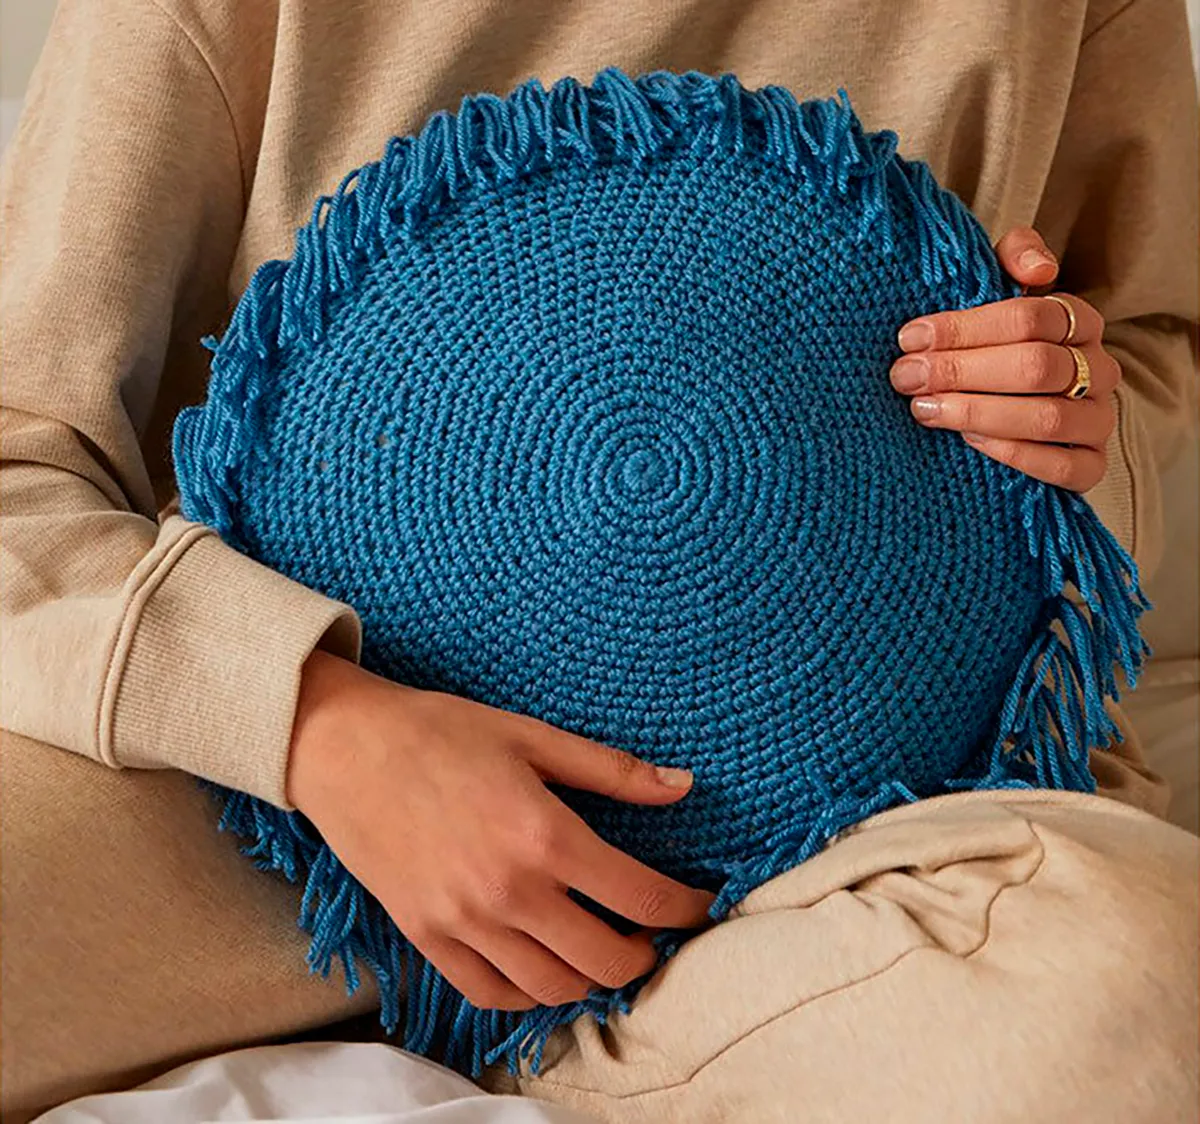 dmc cushion crochet kit for beginners